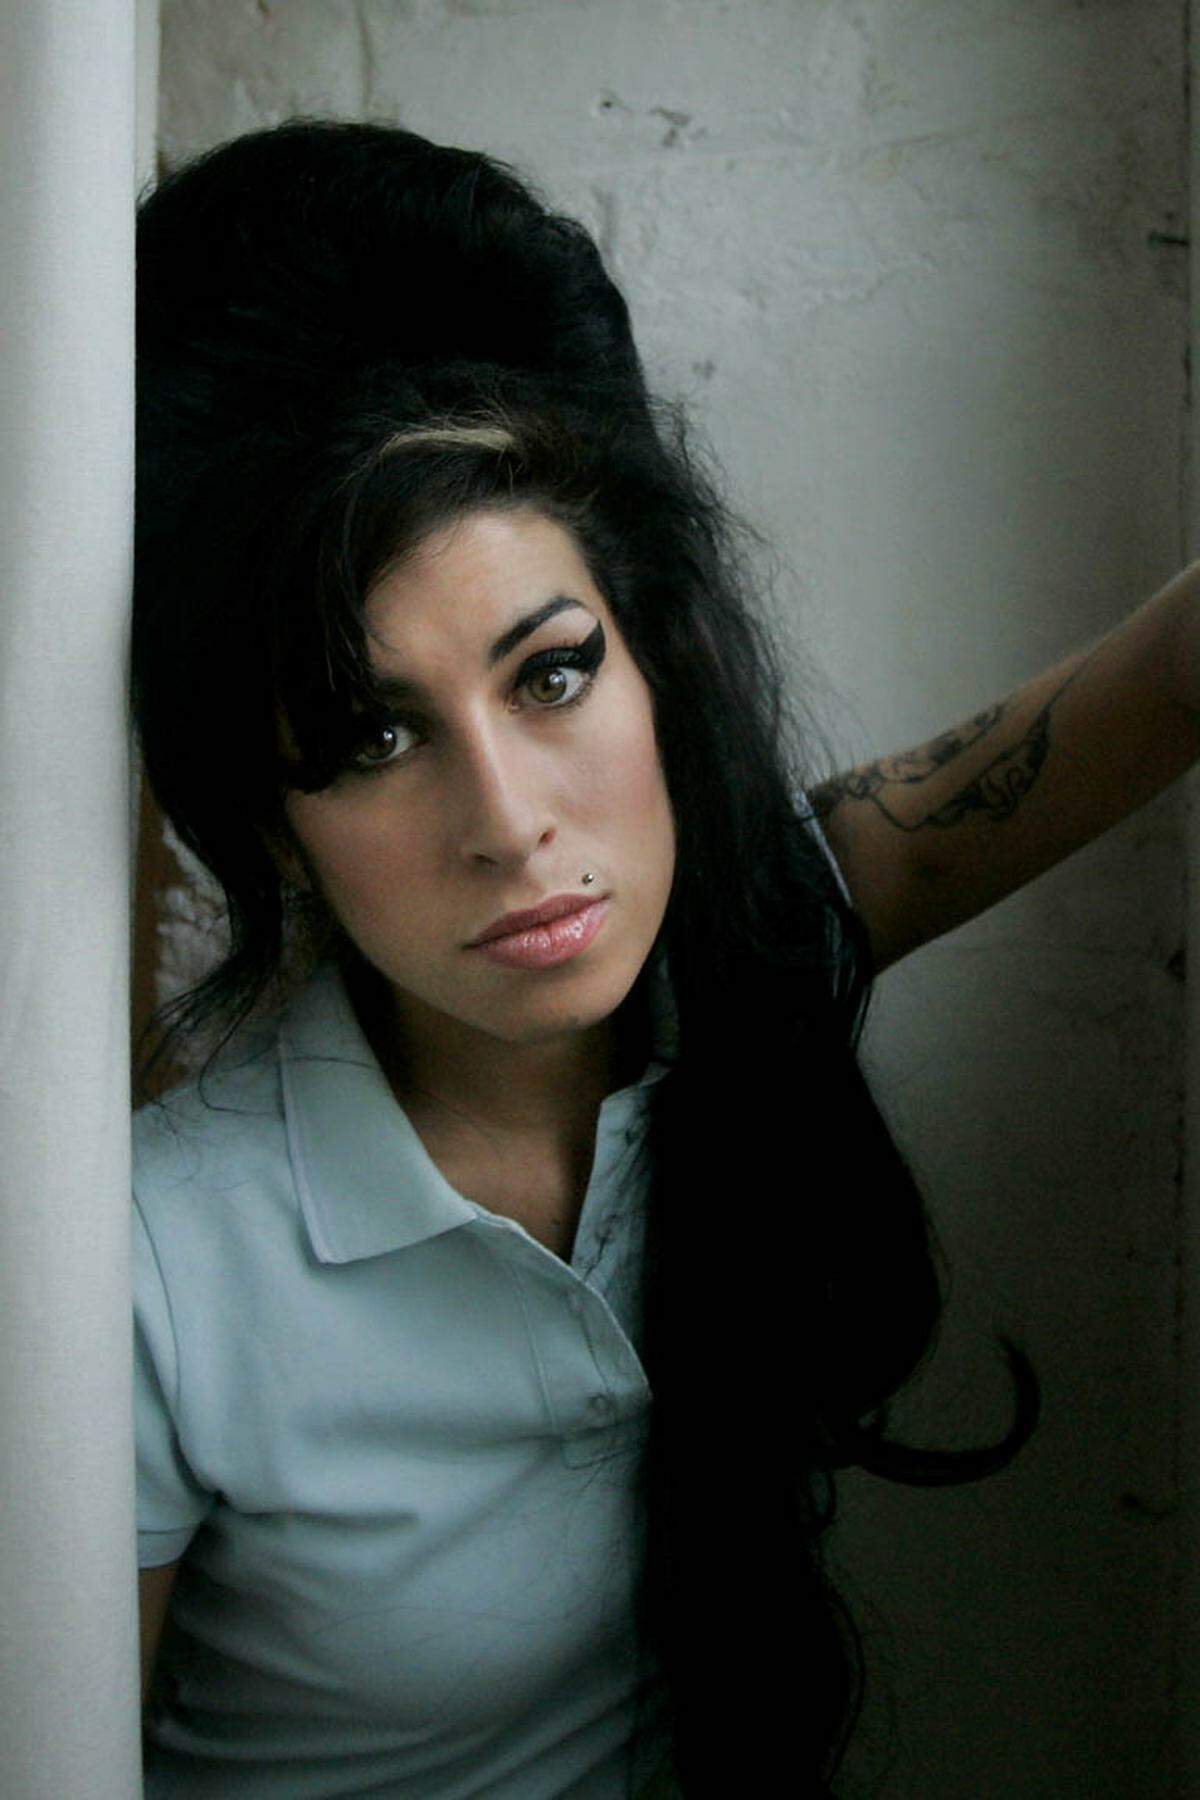 Im Juni 2011 ist sie zum Start ihrer Europa-Tournee in Belgrad zu betrunken, um zu singen. Das Publikum buht sie gnadenlos aus. Daraufhin werden alle Konzerte abgesagt, darunter auch ein Auftritt am 24. Juli 2011 in Wiesen. Einen Monat nach dem Eklat von Belgrad wird Winehouse tot in ihrer Wohnung in Nordlondon aufgefunden. Sie starb an einer Alkoholvergiftung.